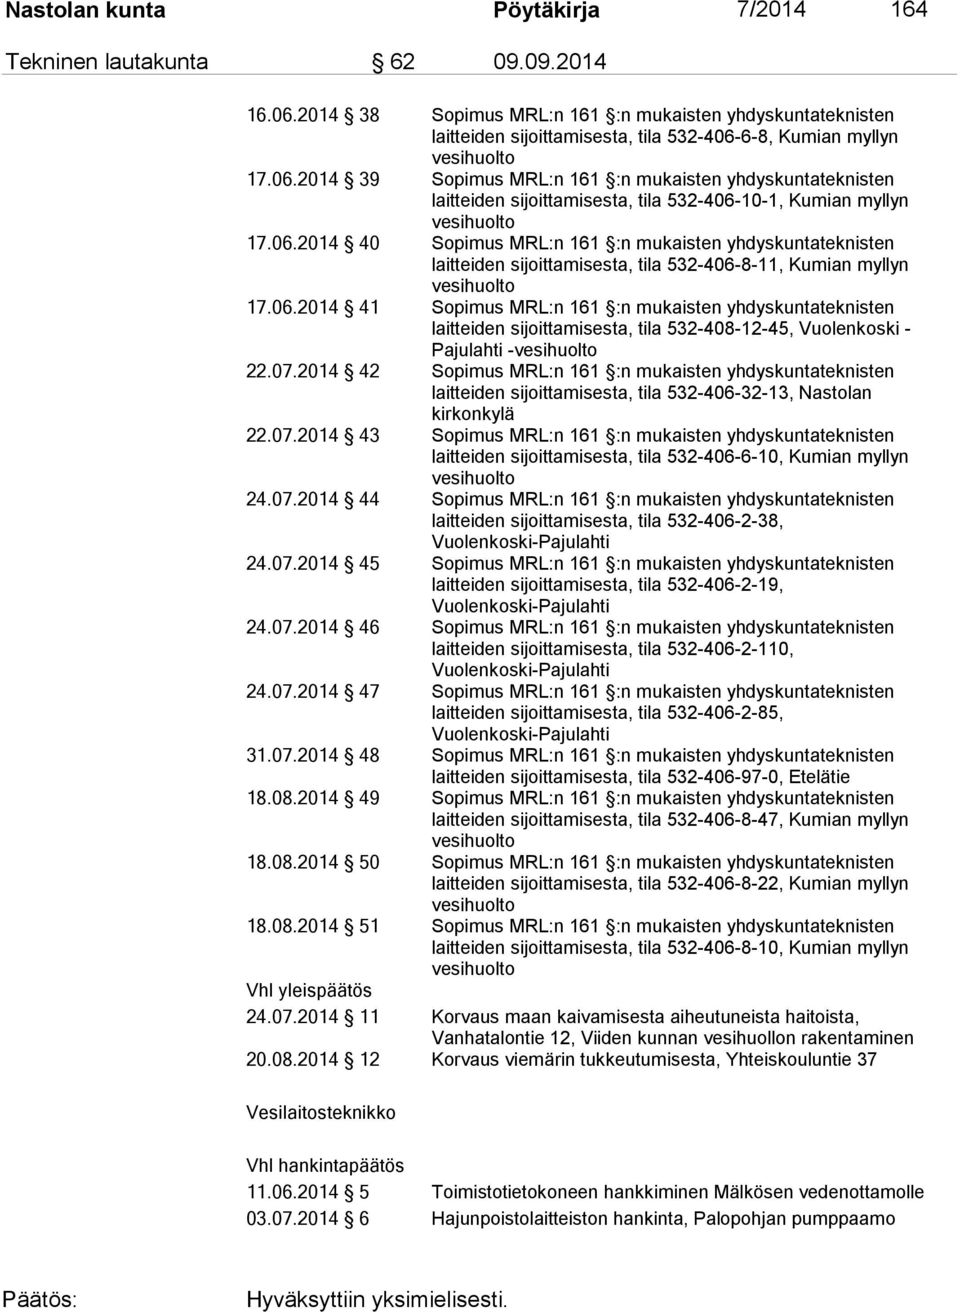 06.2014 41 Sopimus MRL:n 161 :n mukaisten yhdyskuntateknisten laitteiden sijoittamisesta, tila 532-408-12-45, Vuolenkoski - Pajulahti - 22.07.